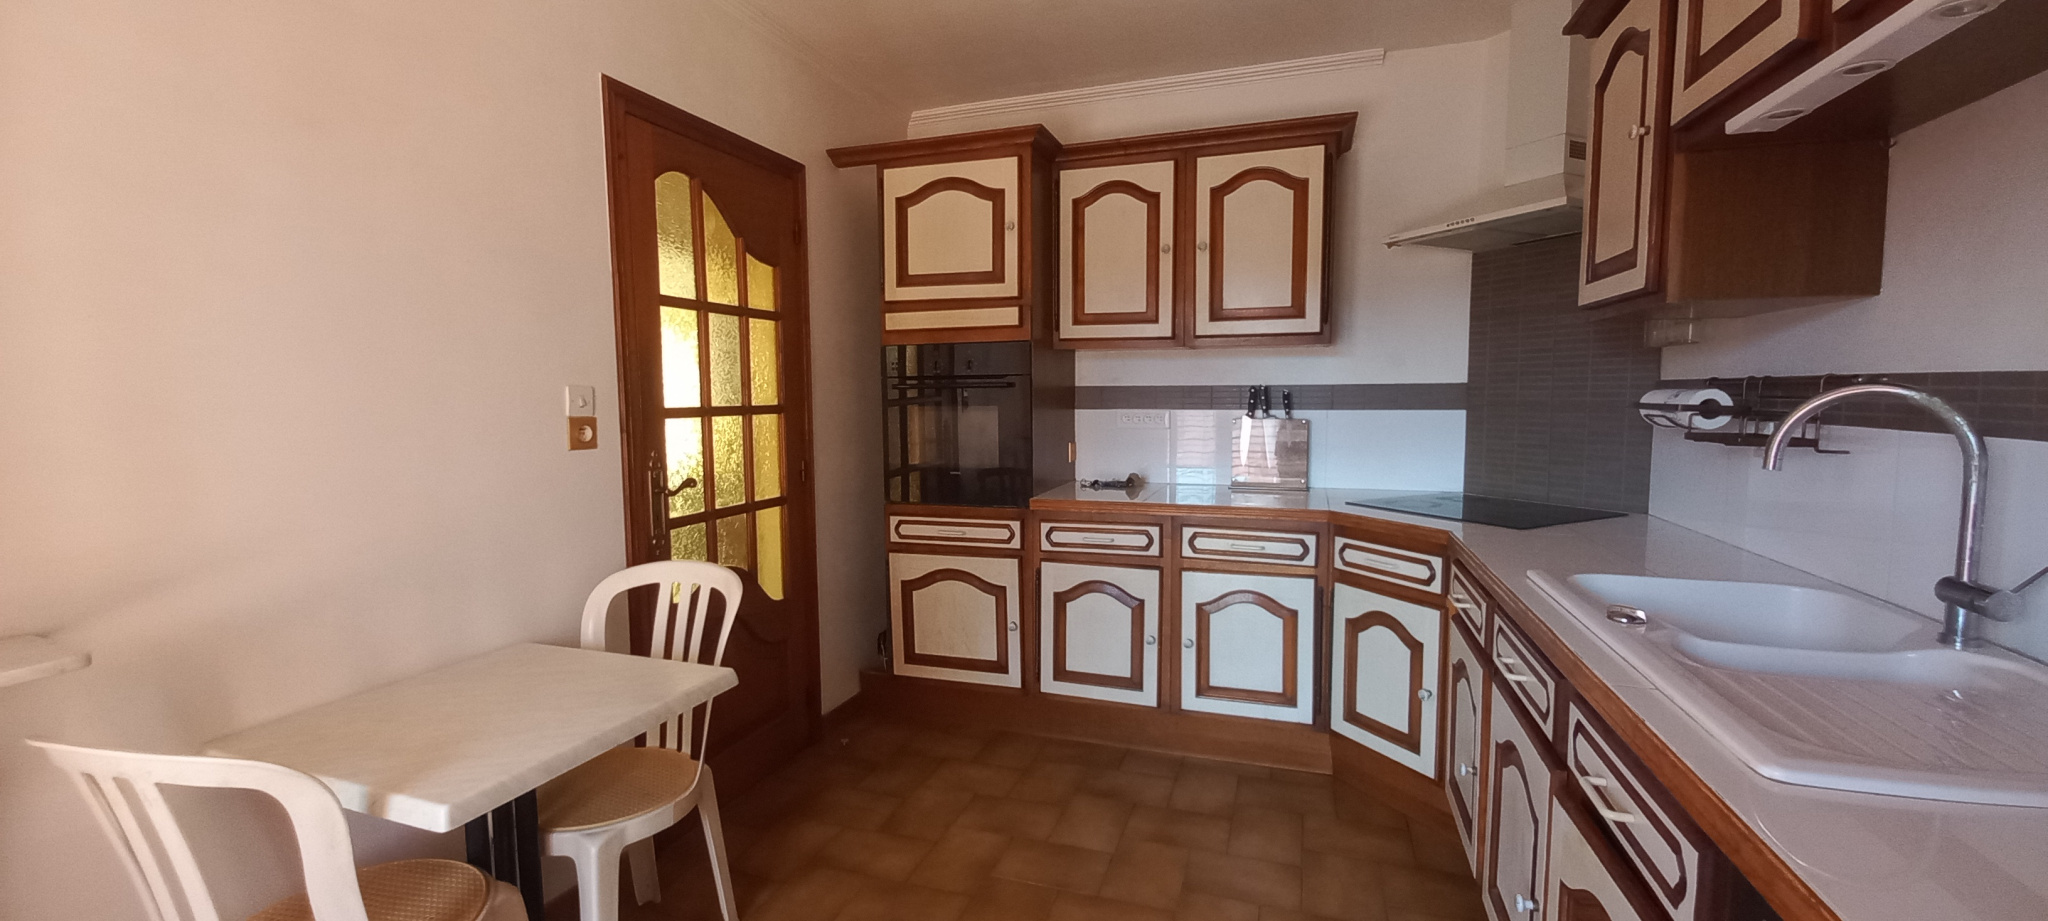 À vendre maison/villa de 121m2 à argelès-sur-mer (66700) - Photo 9'